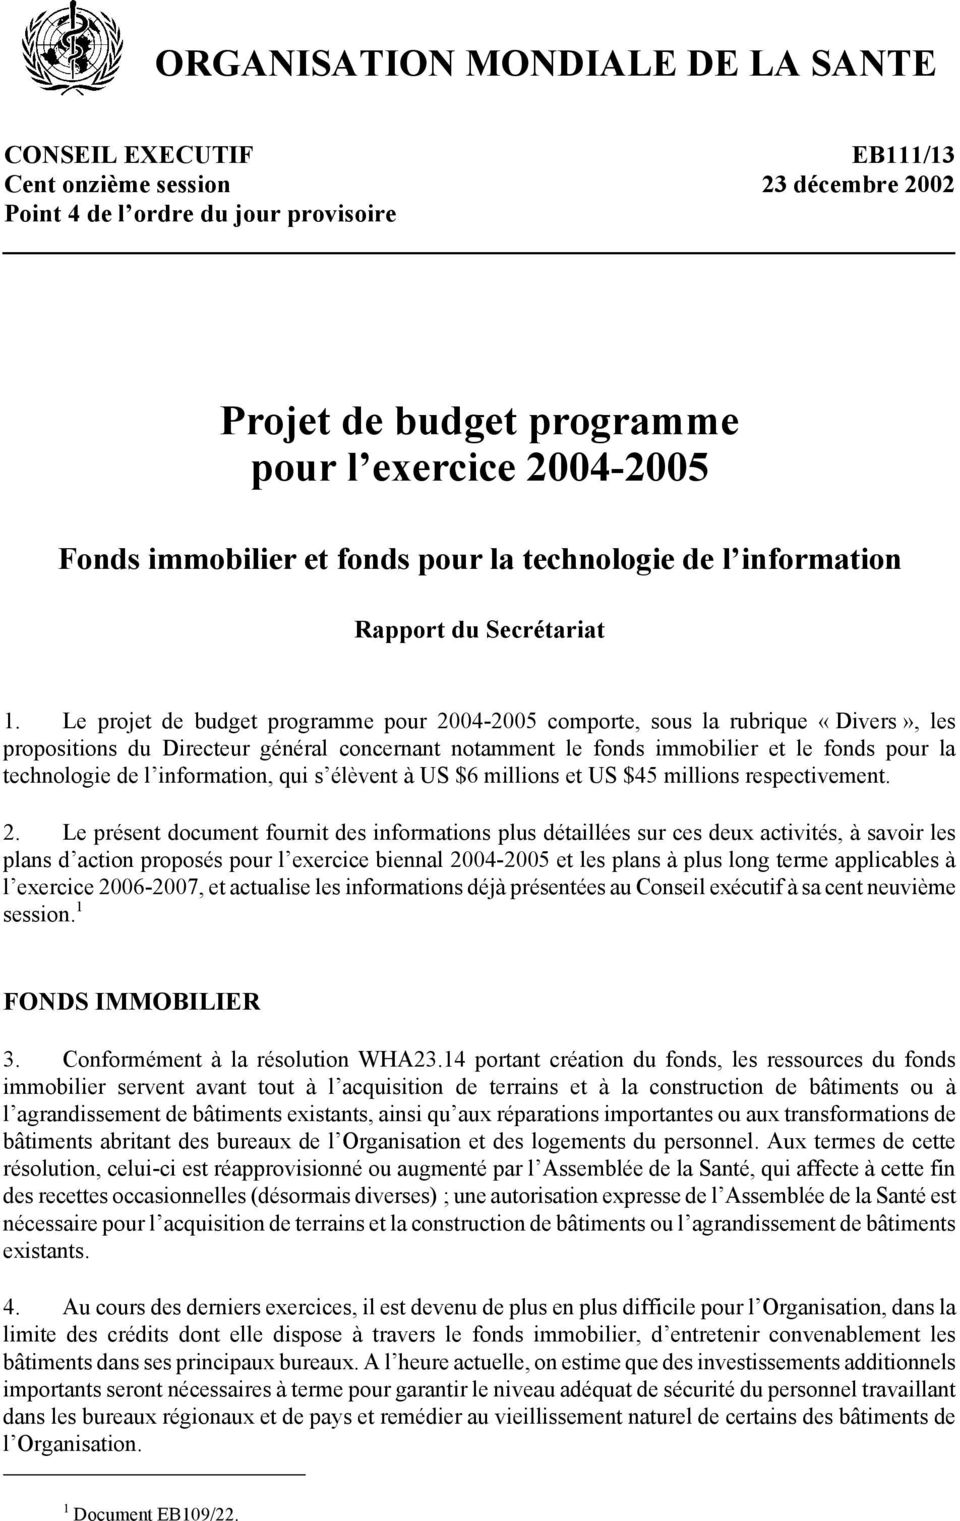 Le projet de budget programme pour 2004-2005 comporte, sous la rubrique «Divers», les propositions du Directeur général concernant notamment le fonds immobilier et le fonds pour la technologie de l